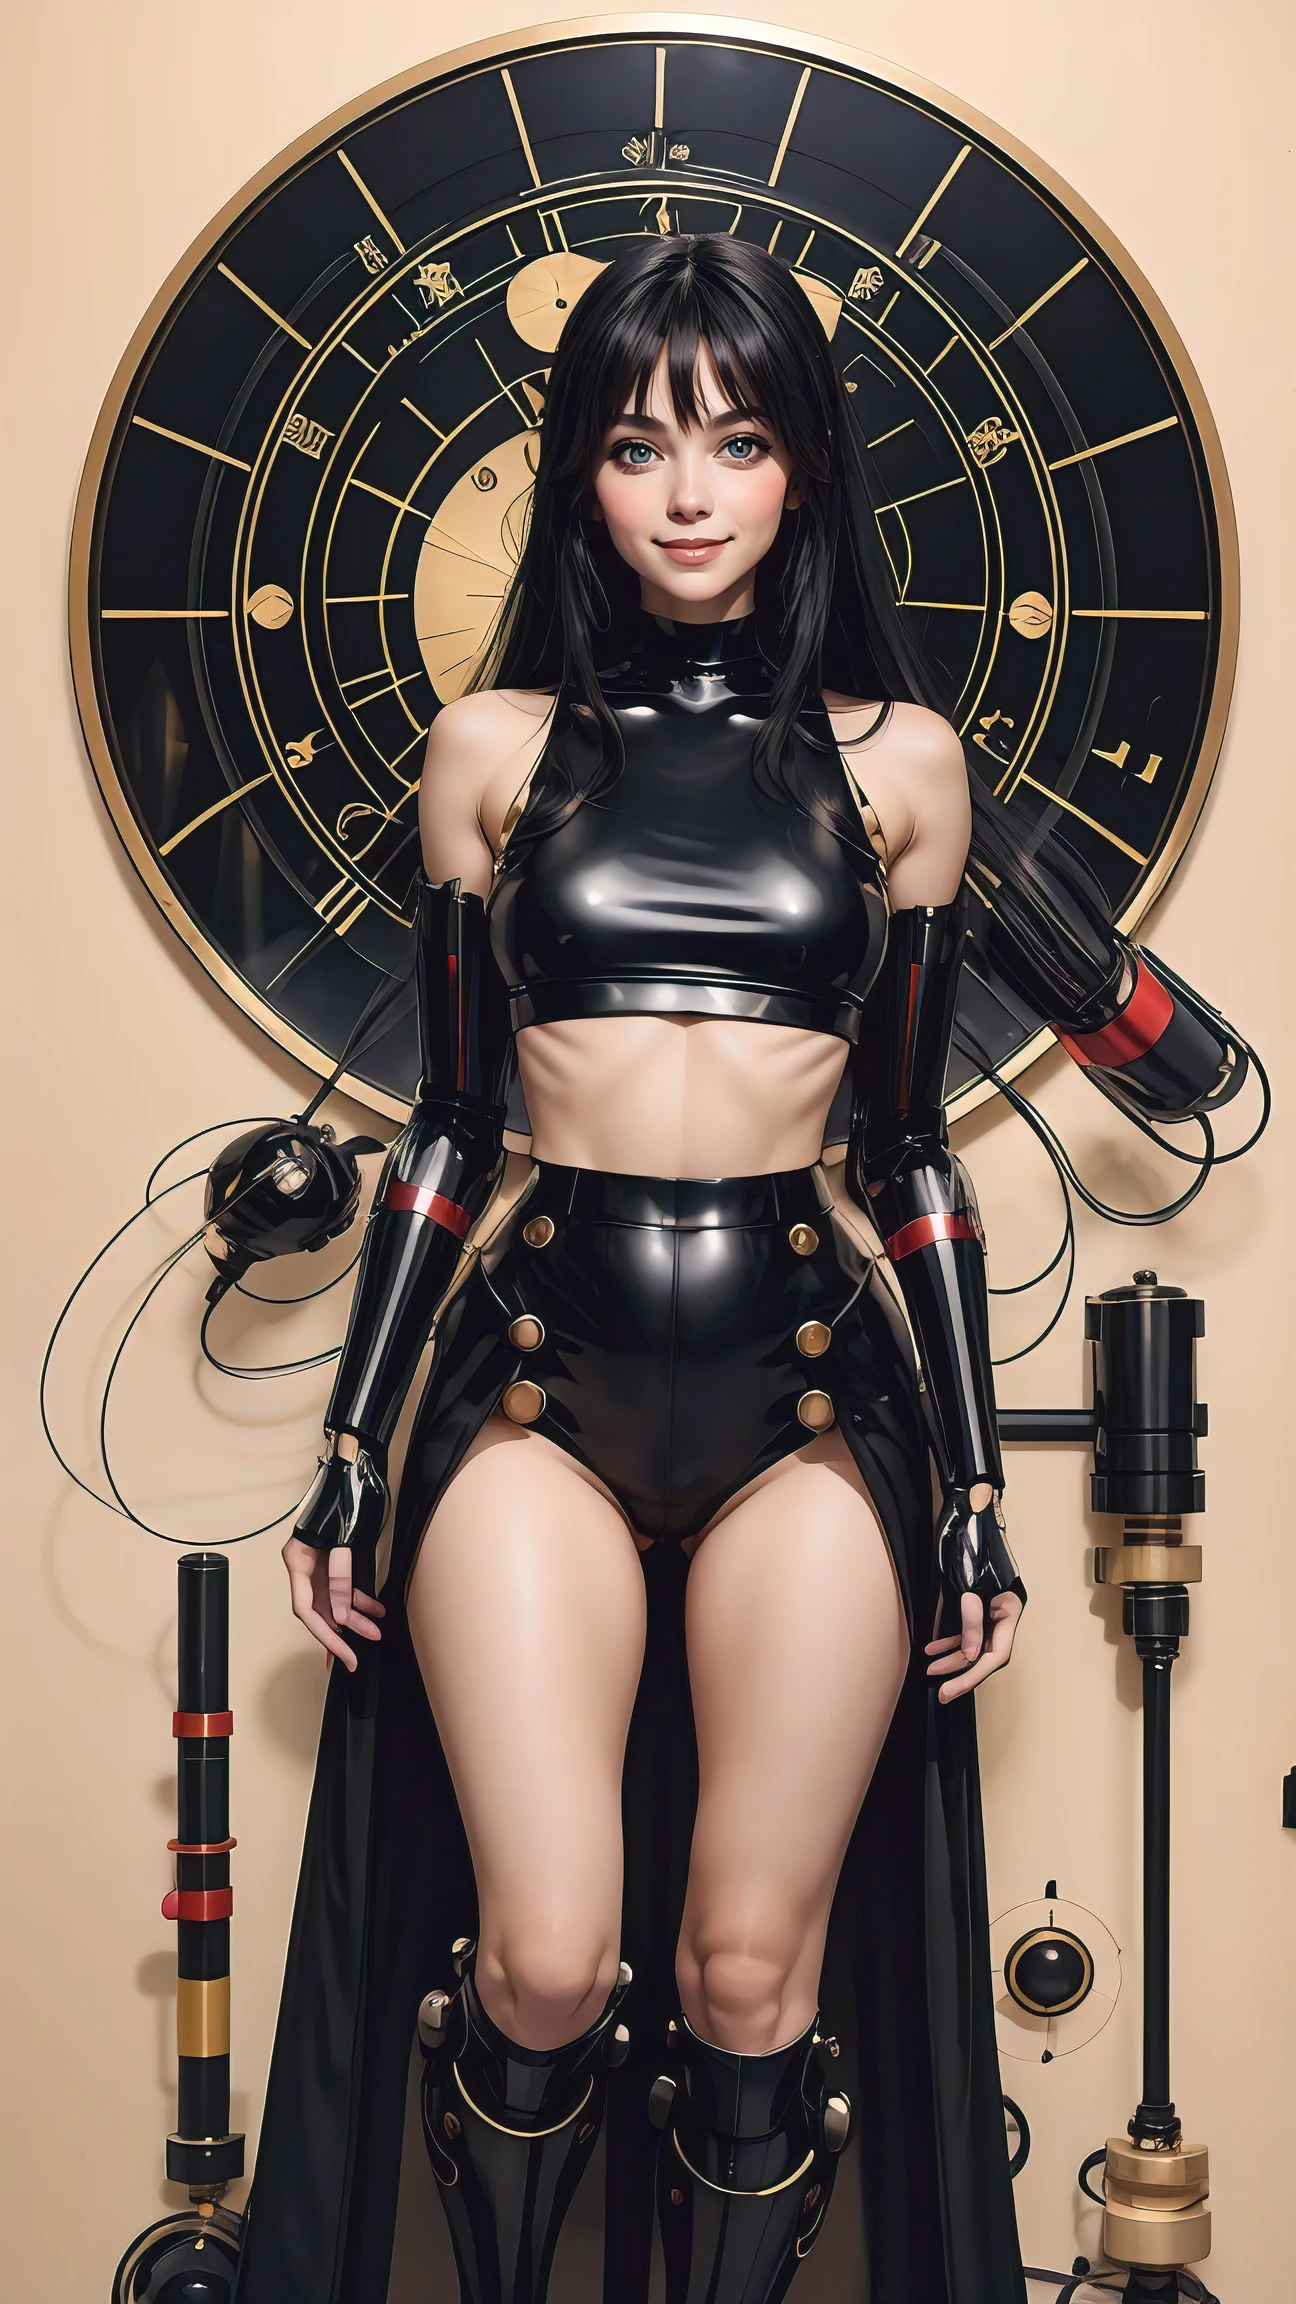 tiro de corpo inteiro ,moda, Surreal, Mulher japonesa vestindo um top preto curto, grandes olhos castanhos , corpo misturado com um robô, cabelo preto muito comprido ,anime ,